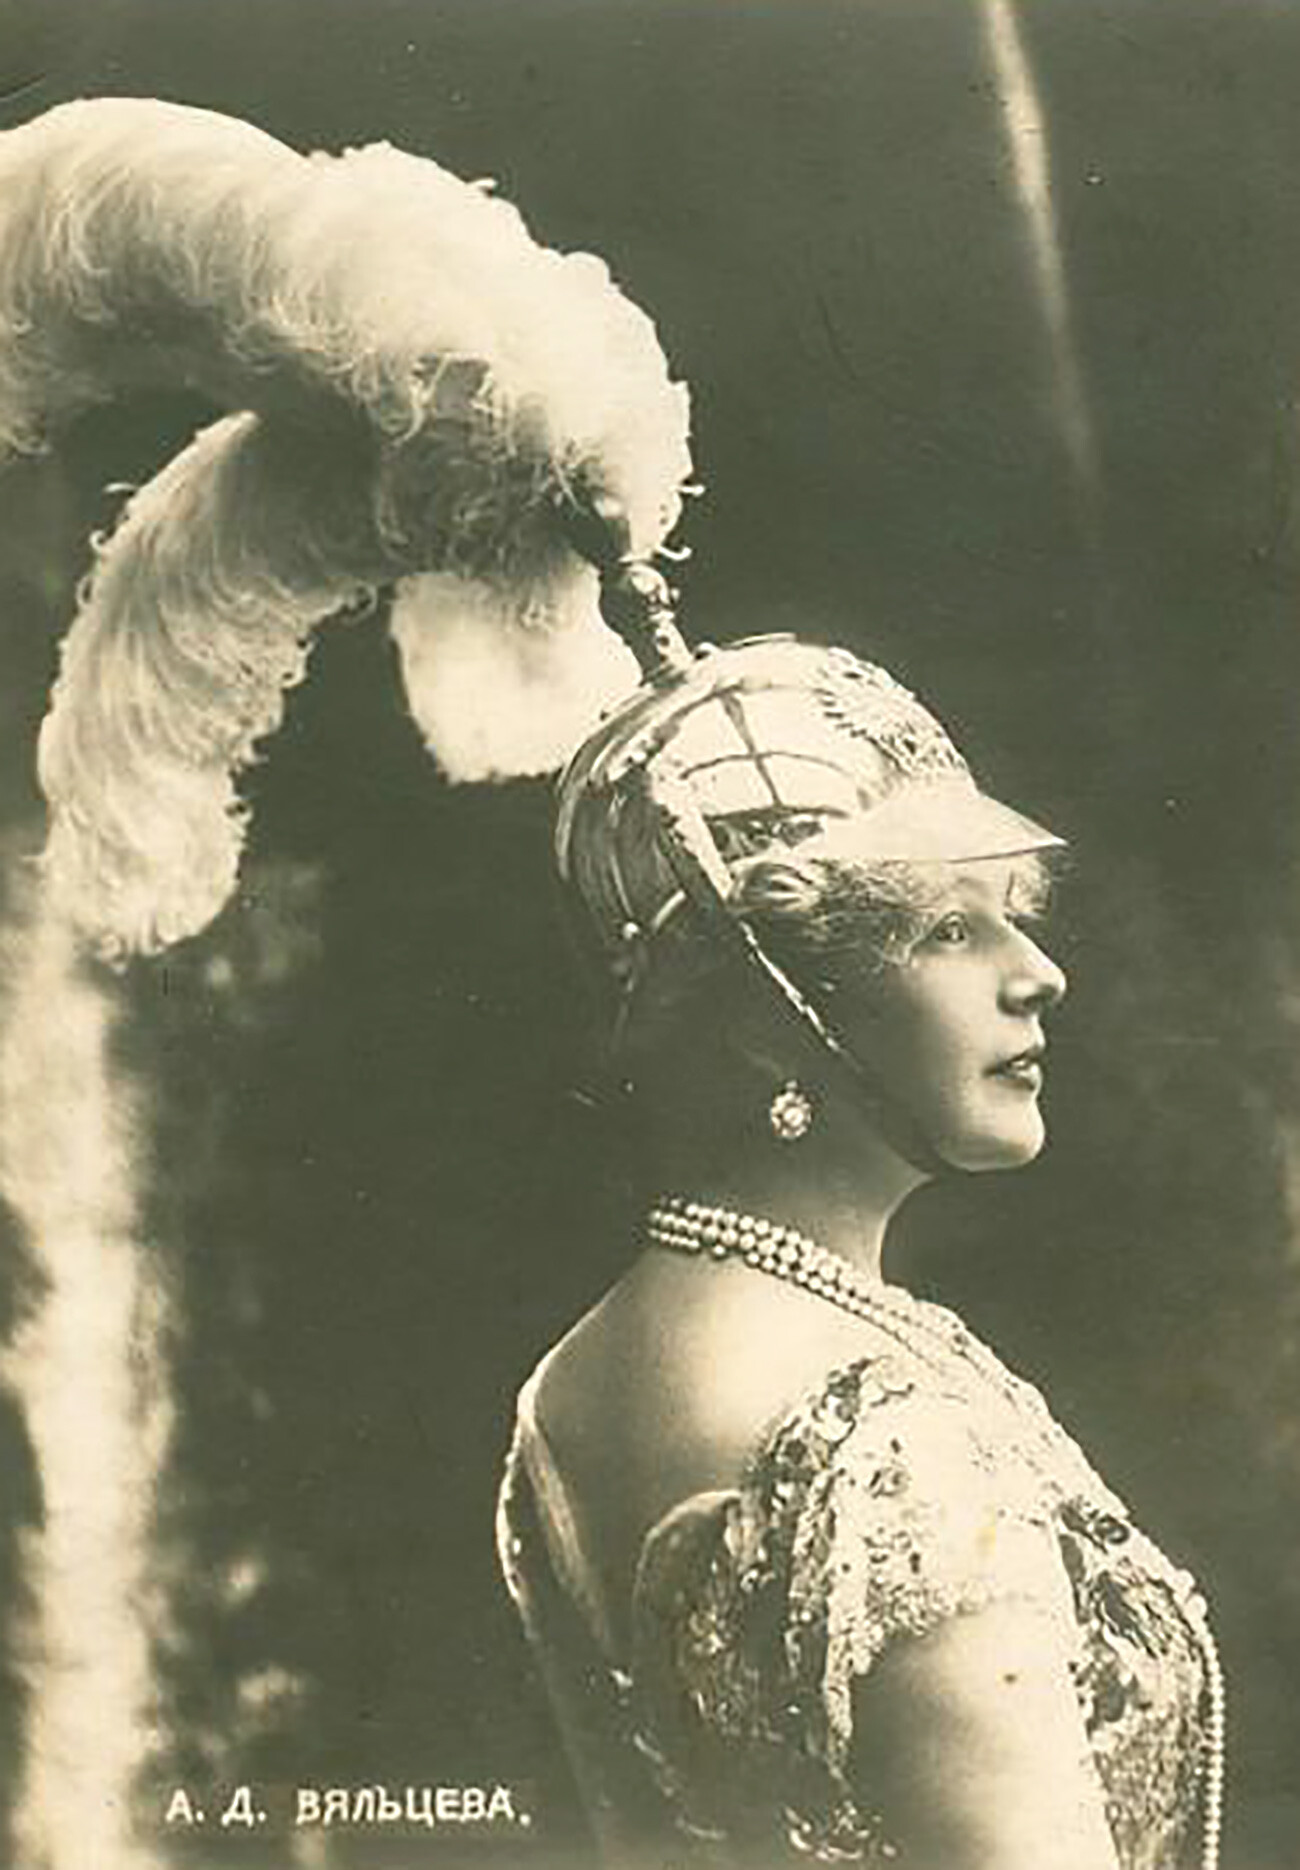 La chanteuse de variétés russe Anastasia Vialtseva, années 1900

